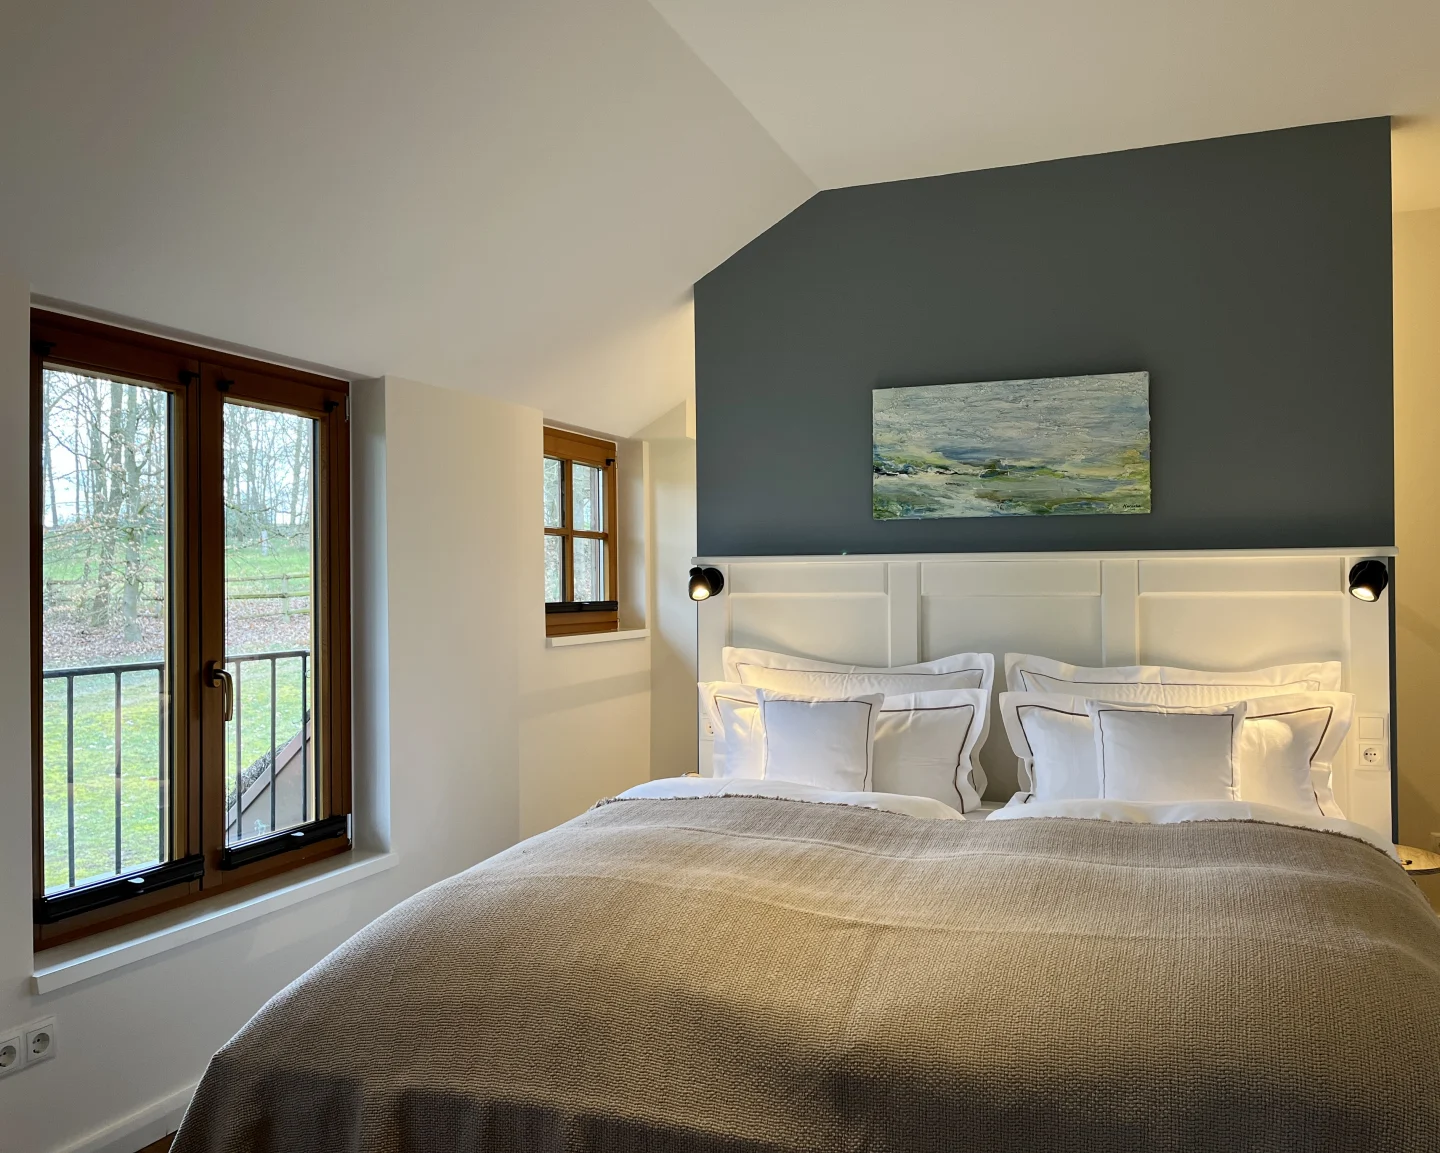 Bild Landhaus Suite Schlafzimmer mit Blick aus Fenster